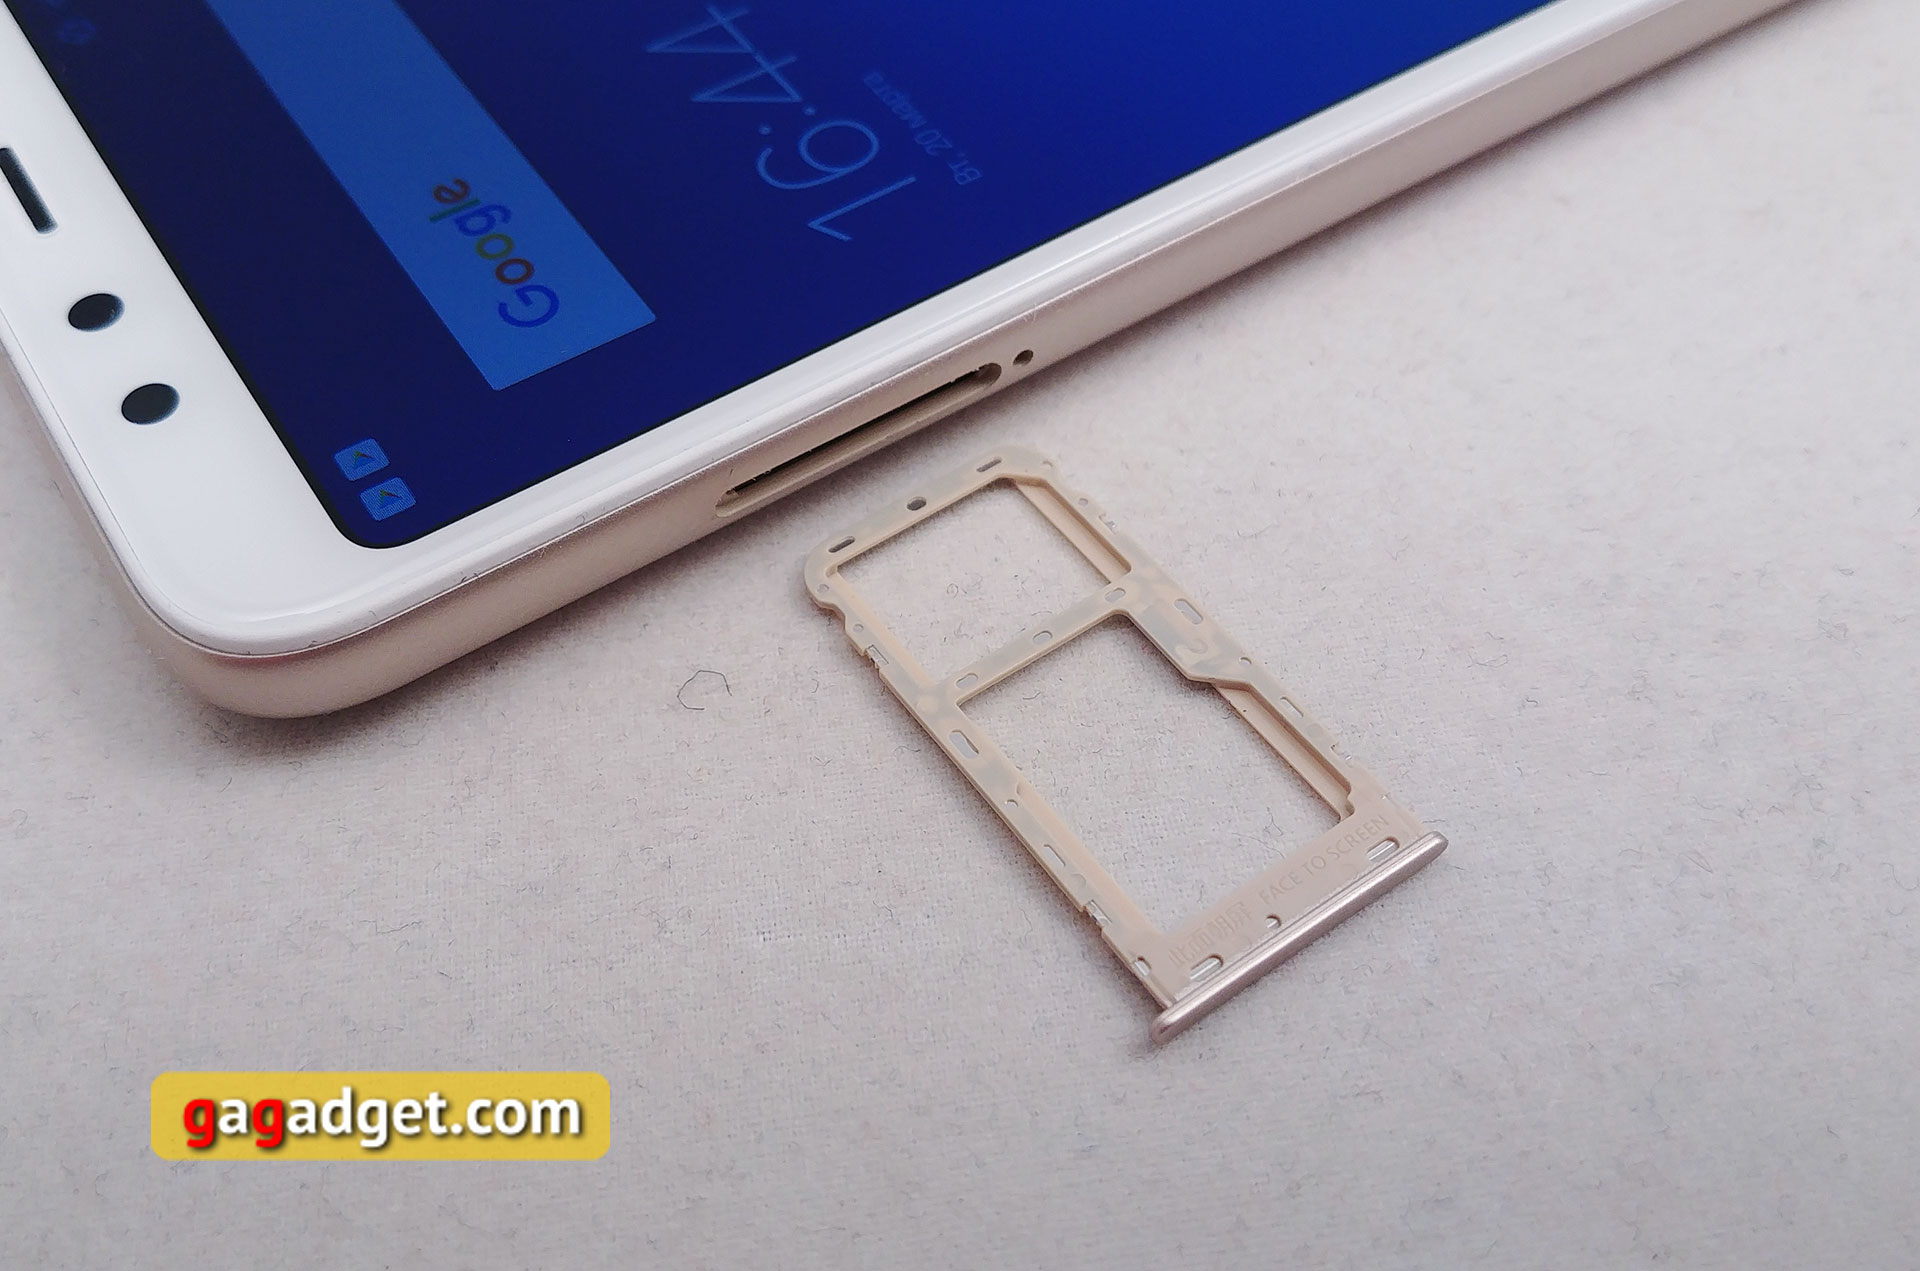 Обзор Xiaomi Redmi 5: хитовый бюджетный смартфон теперь с экраном 18:9-17